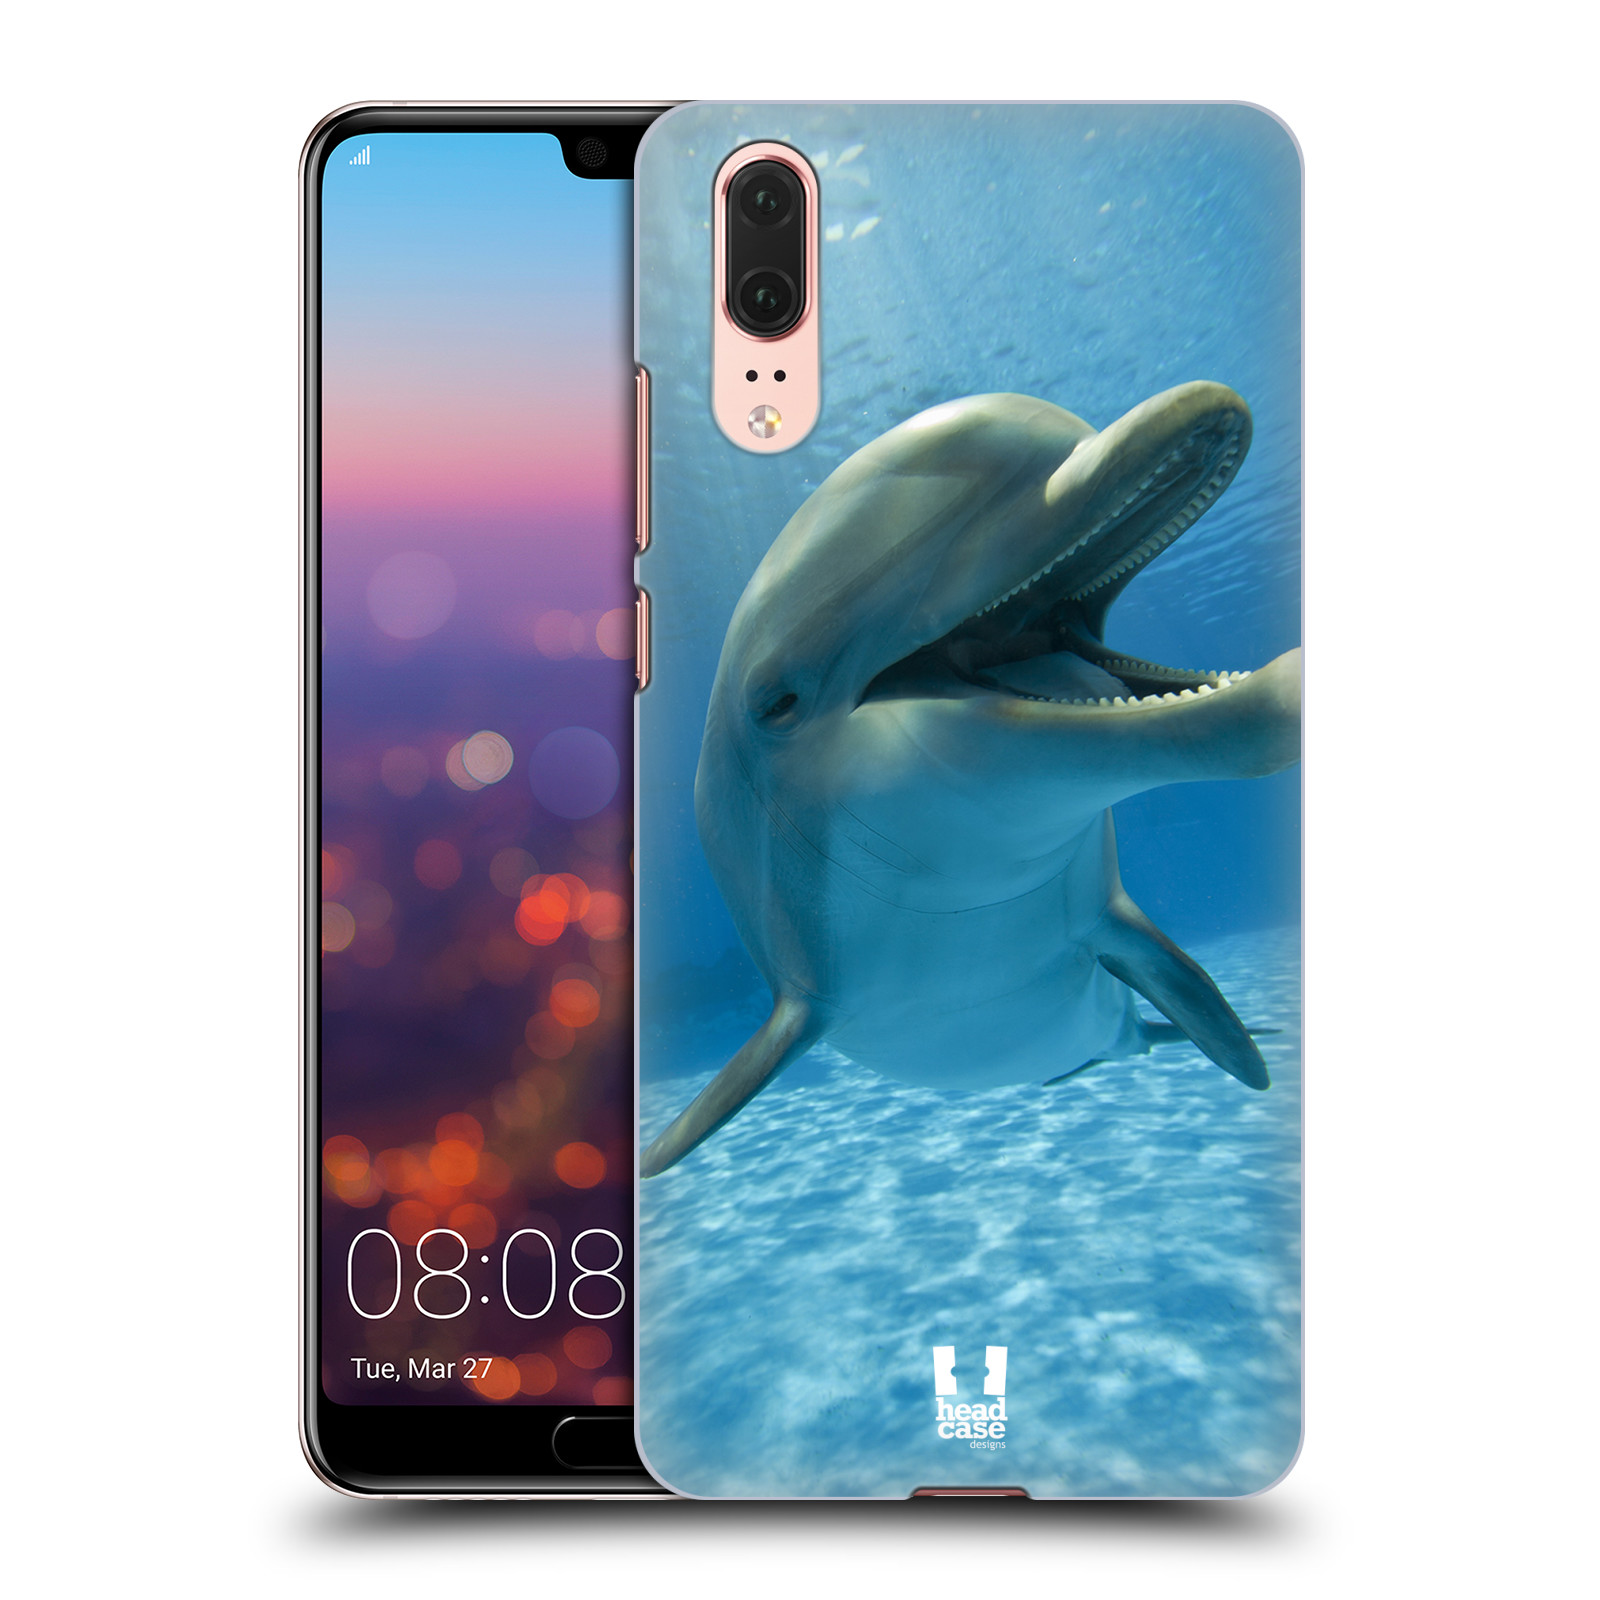 Zadní obal pro mobil Huawei P20 - HEAD CASE - Svět zvířat delfín v moři